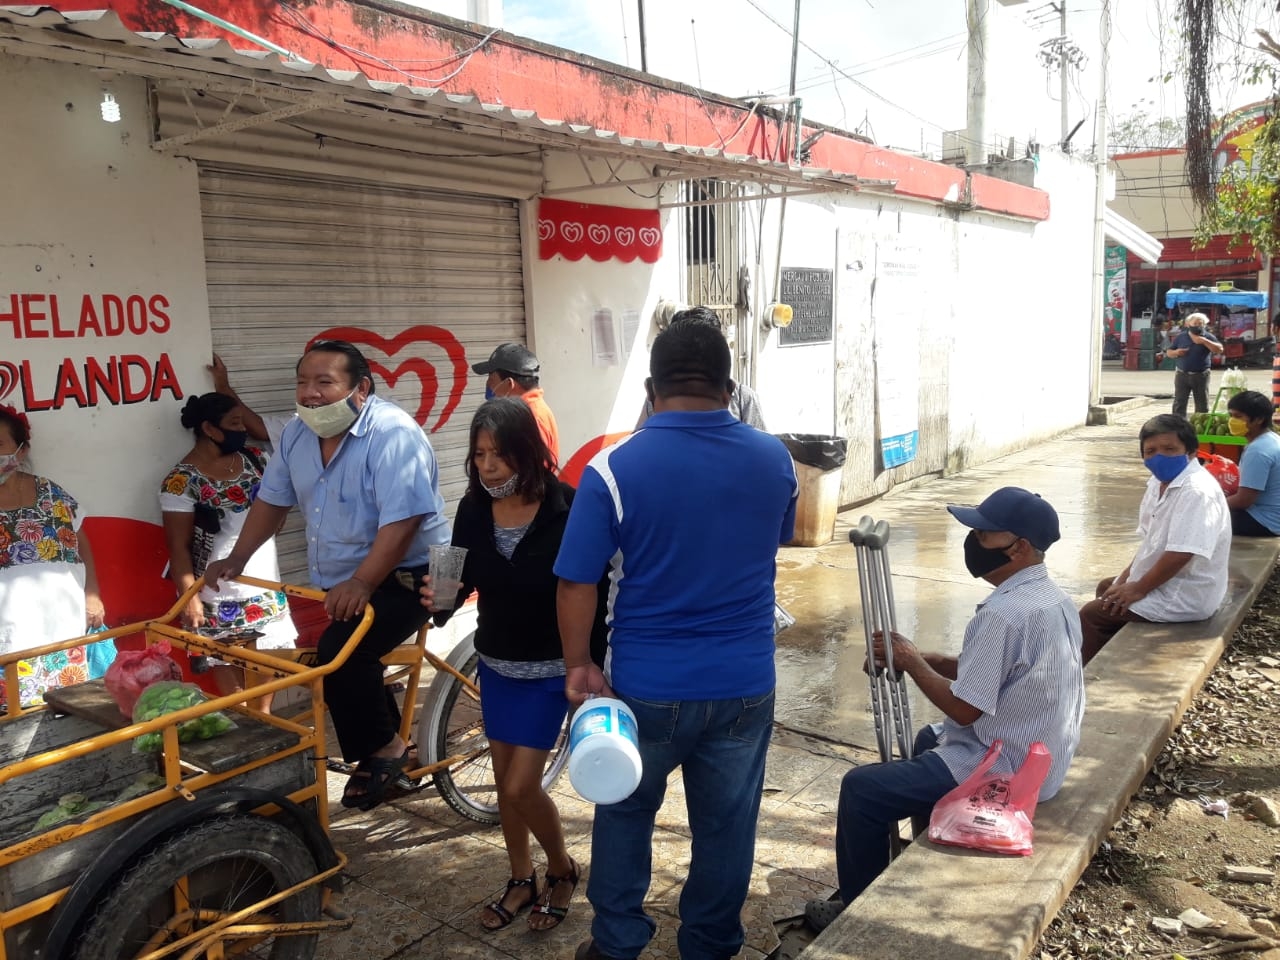 Abarrotan calles de Felipe Carrillo Puerto por compras navideñas